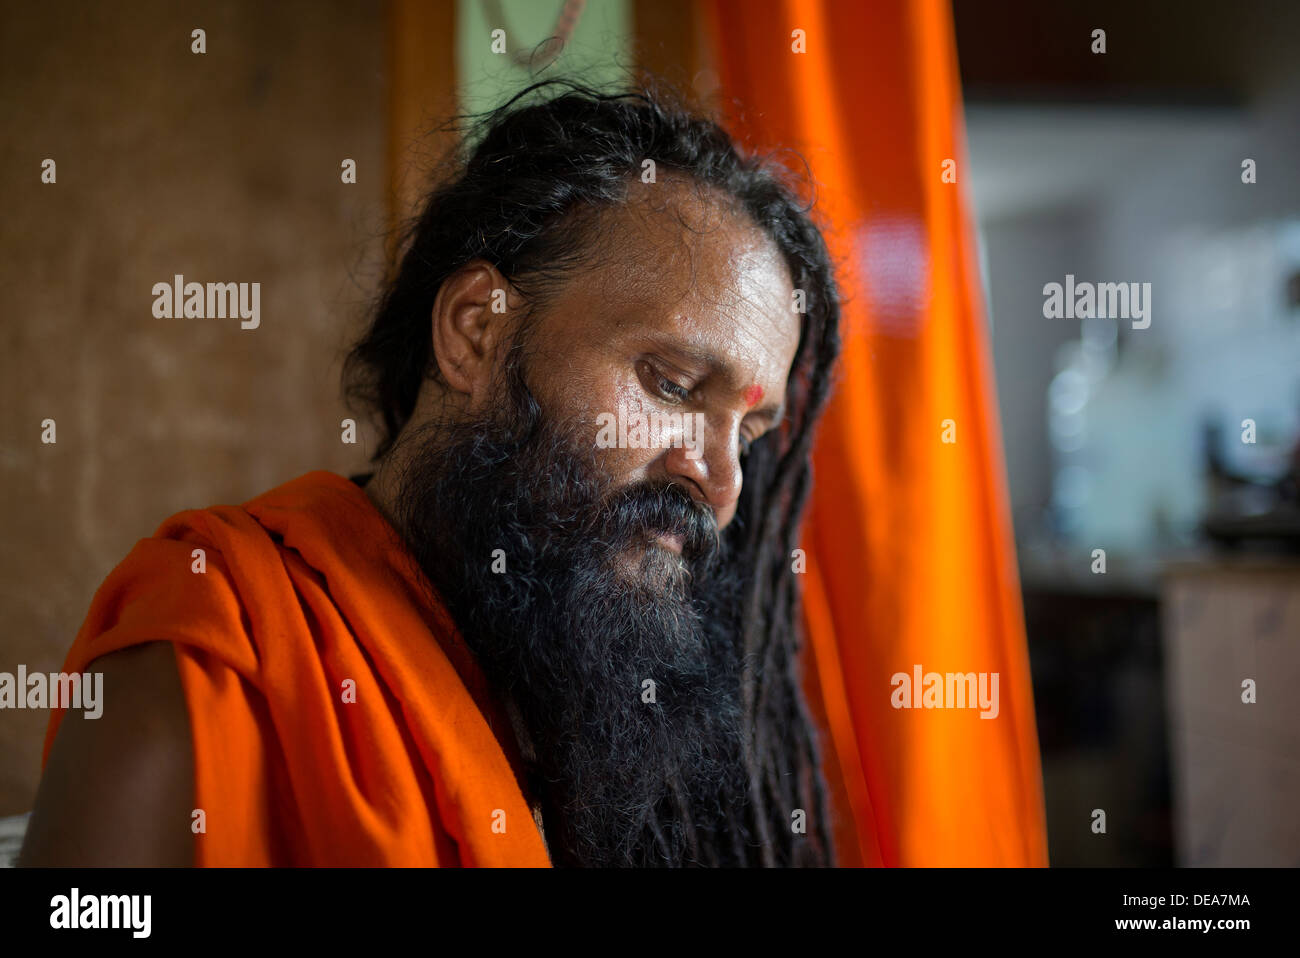 Sadhu indien avec des dreadlocks portrait Banque D'Images